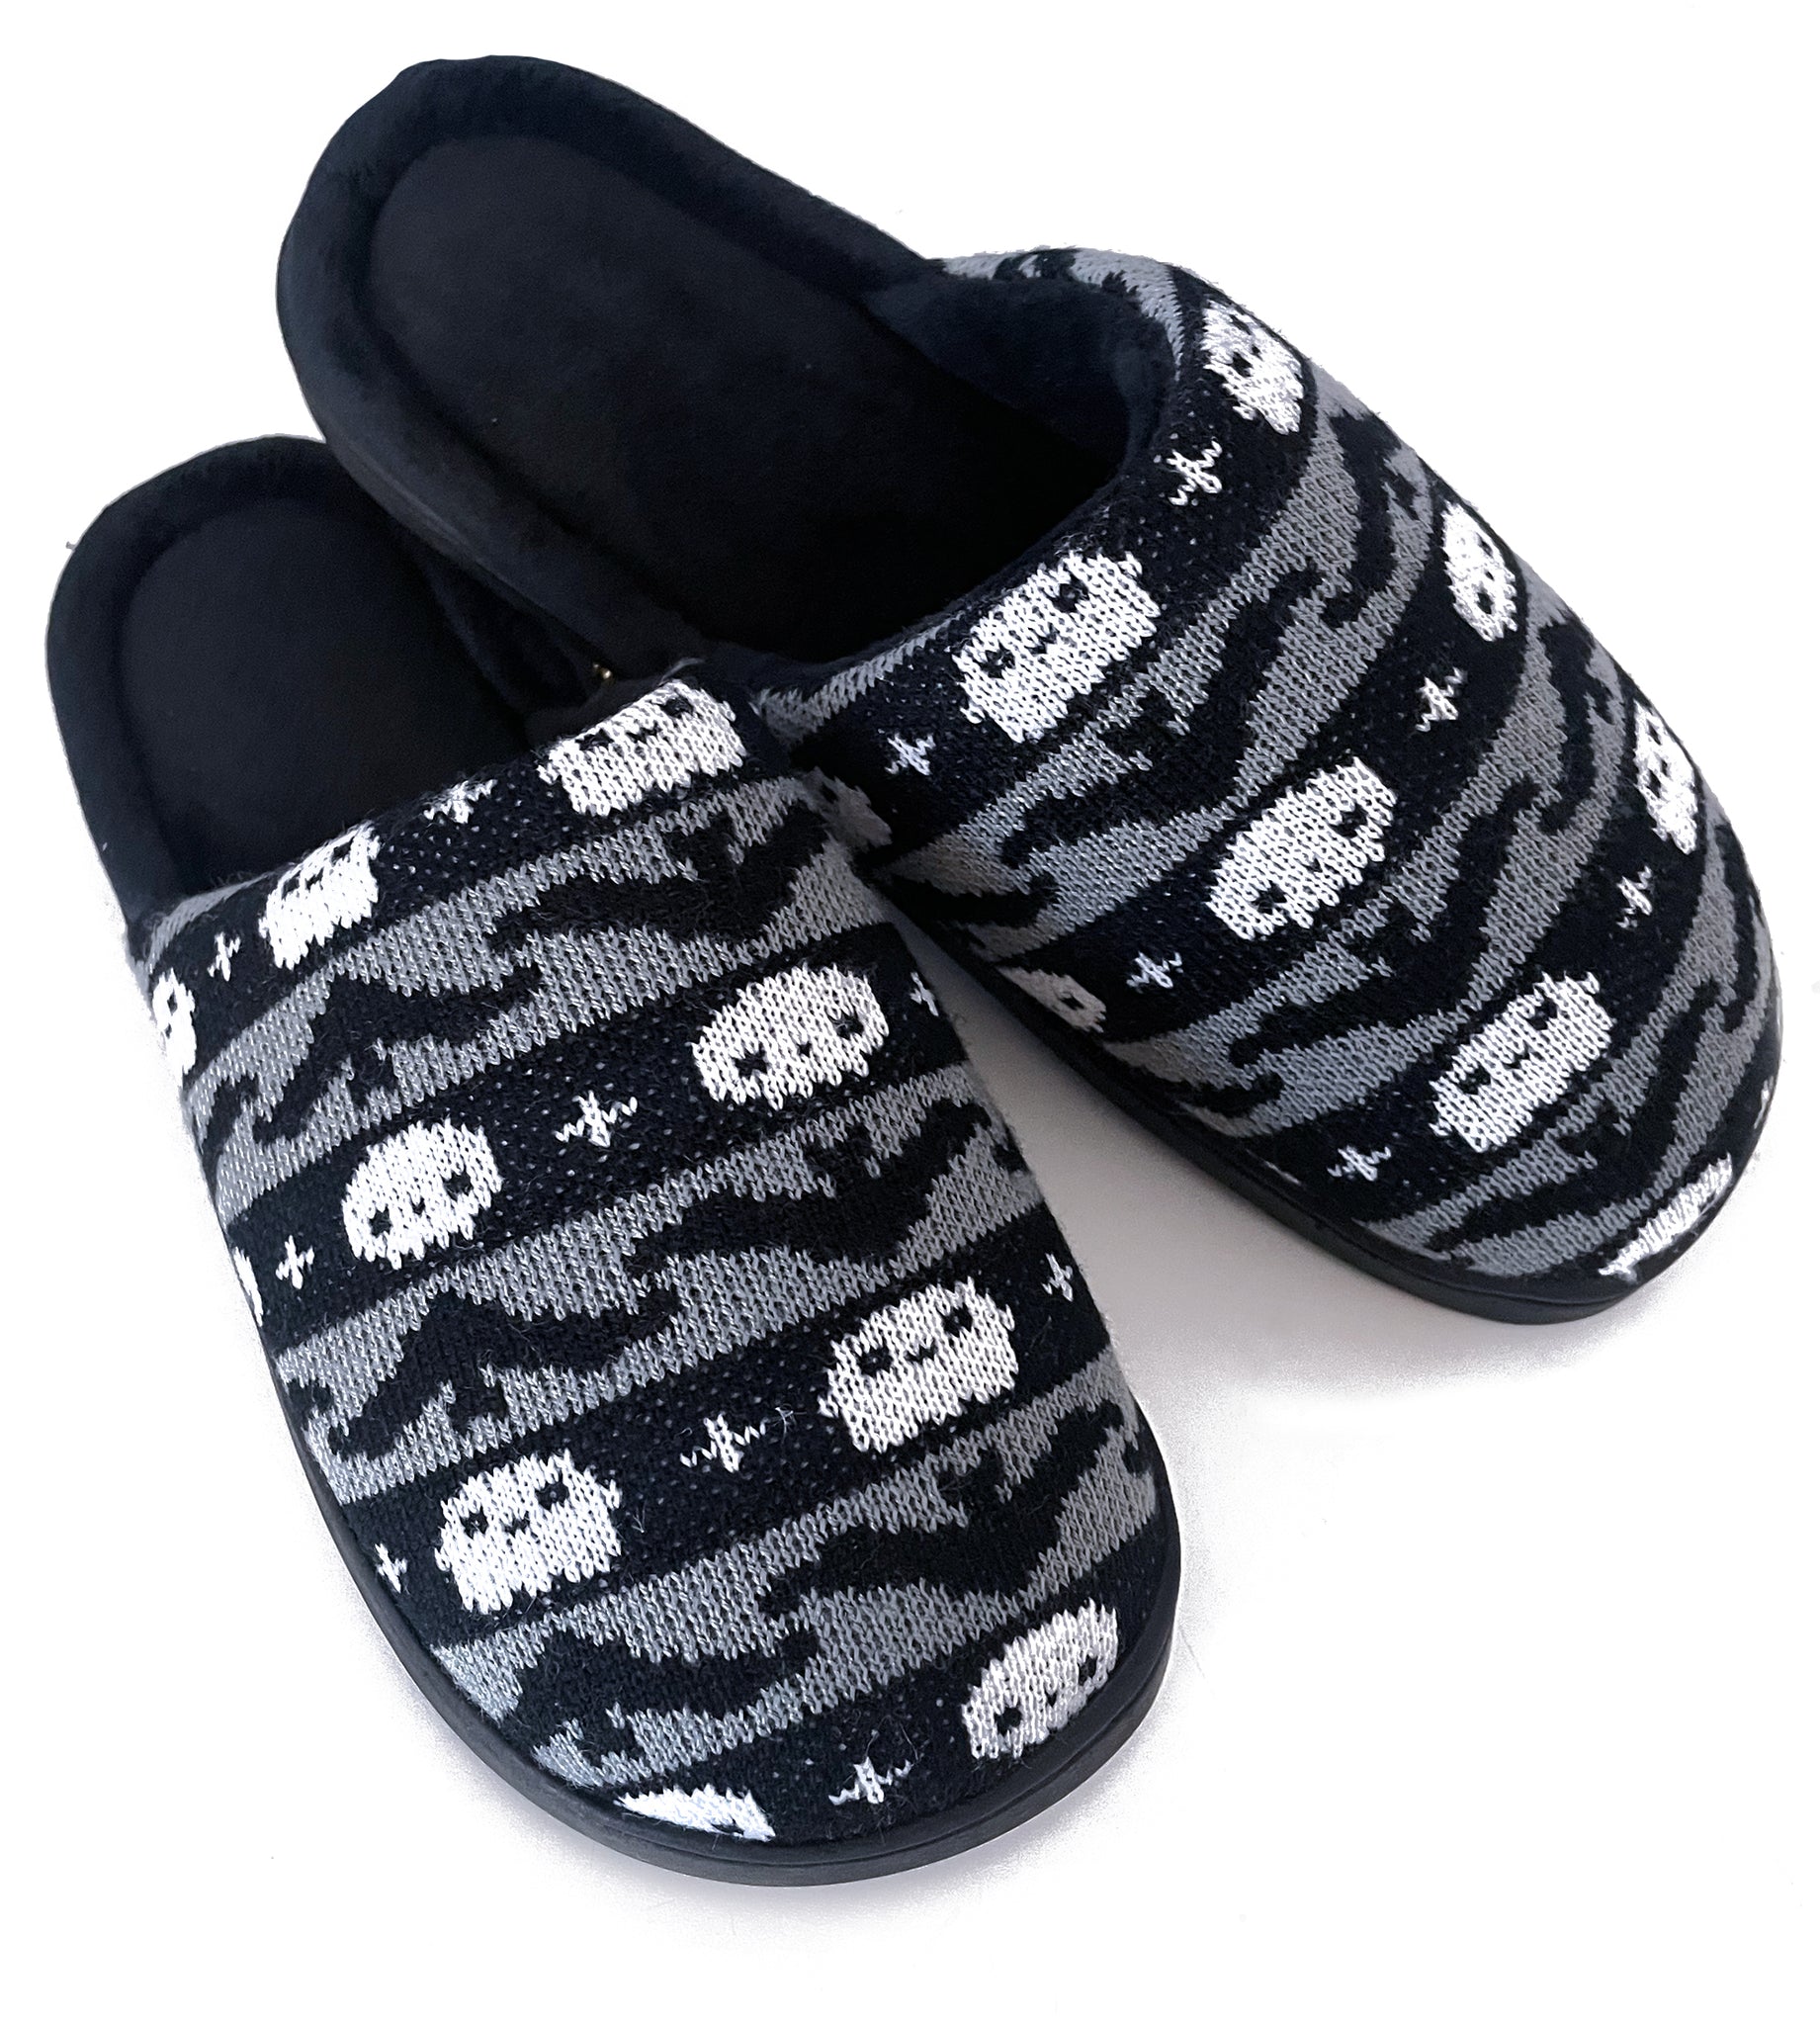 Spooky Knit Slippers